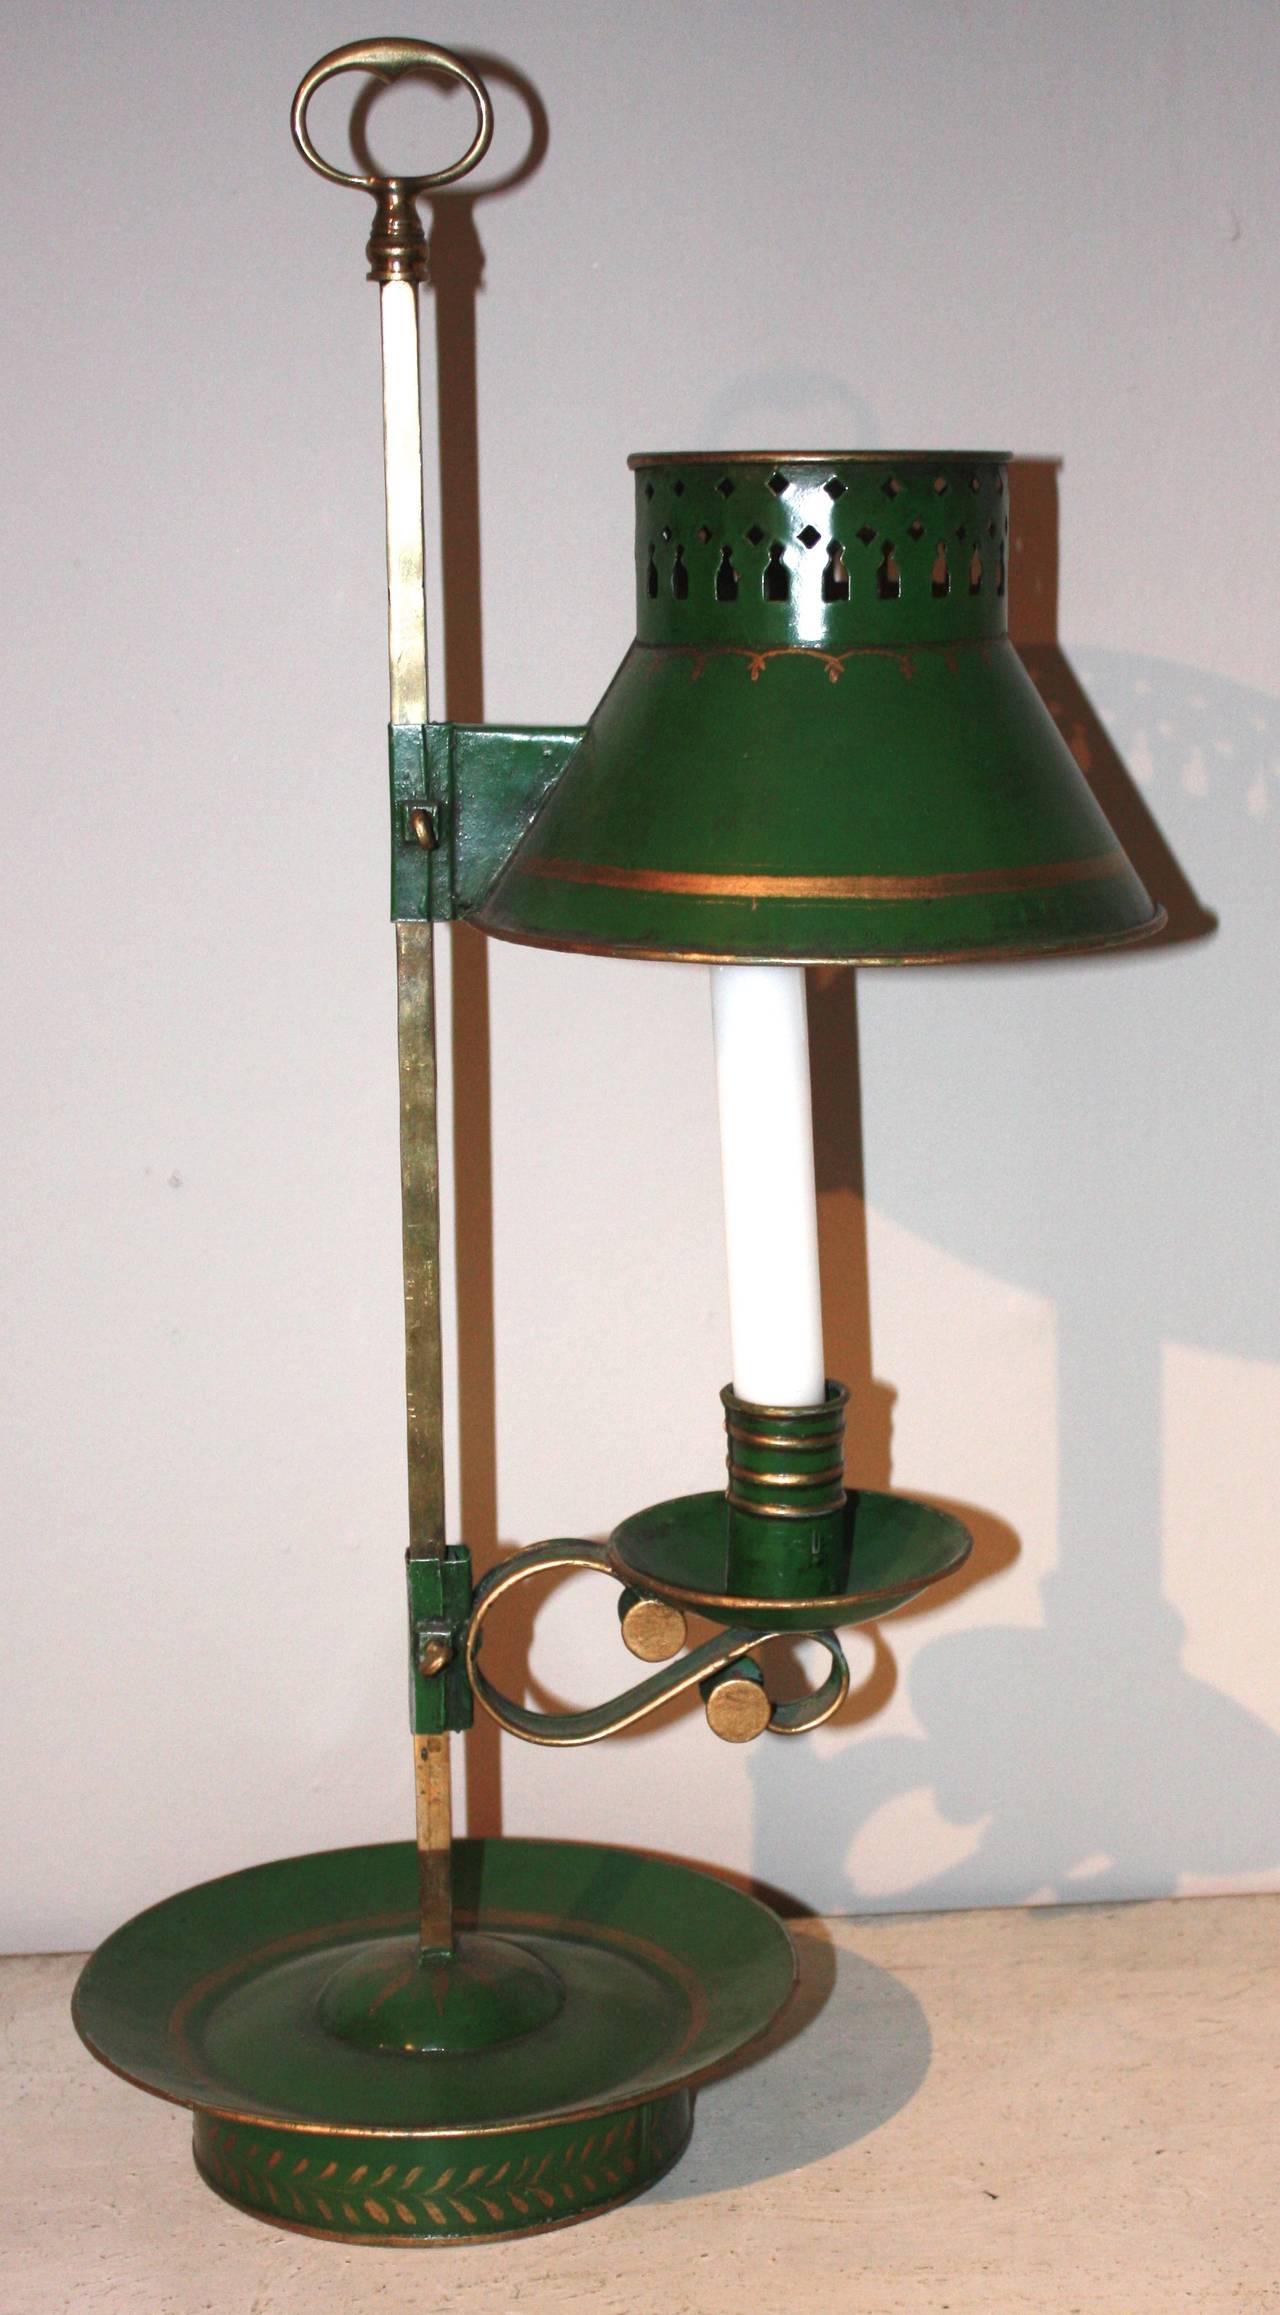 Lampe de table en métal peint en vert et en laiton, avec bougeoir, du XIXe siècle